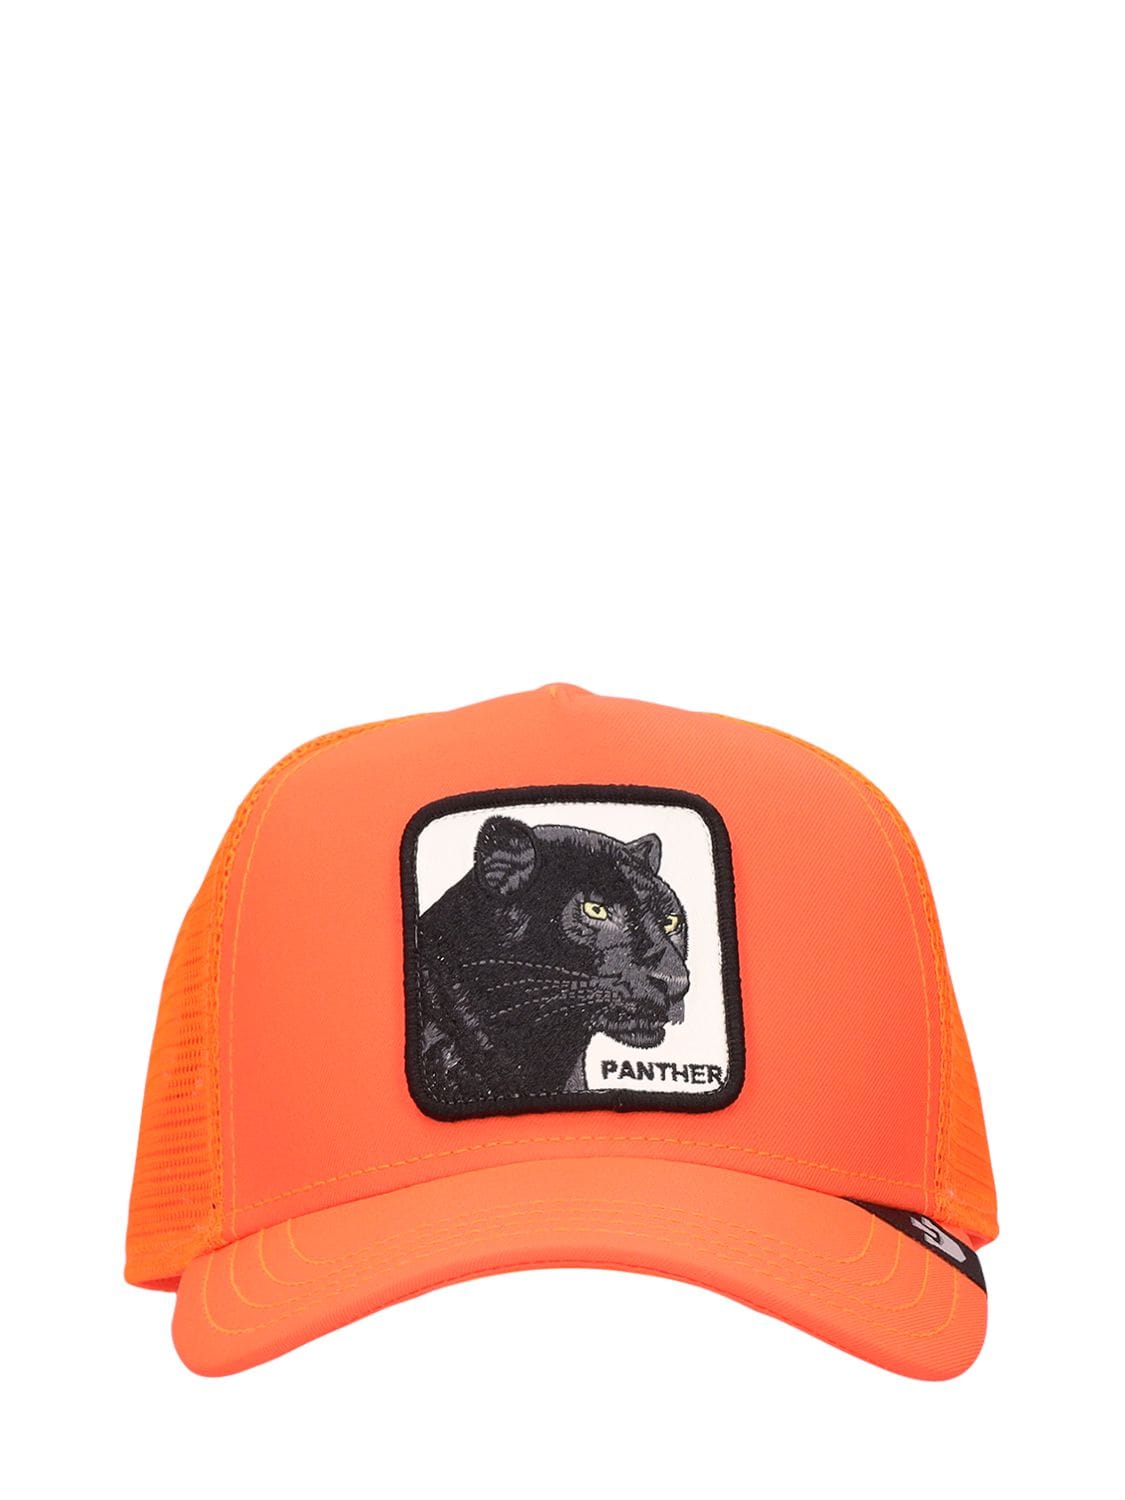 Goorin Bros Panther Trucker Hat W/ Patch In Orange